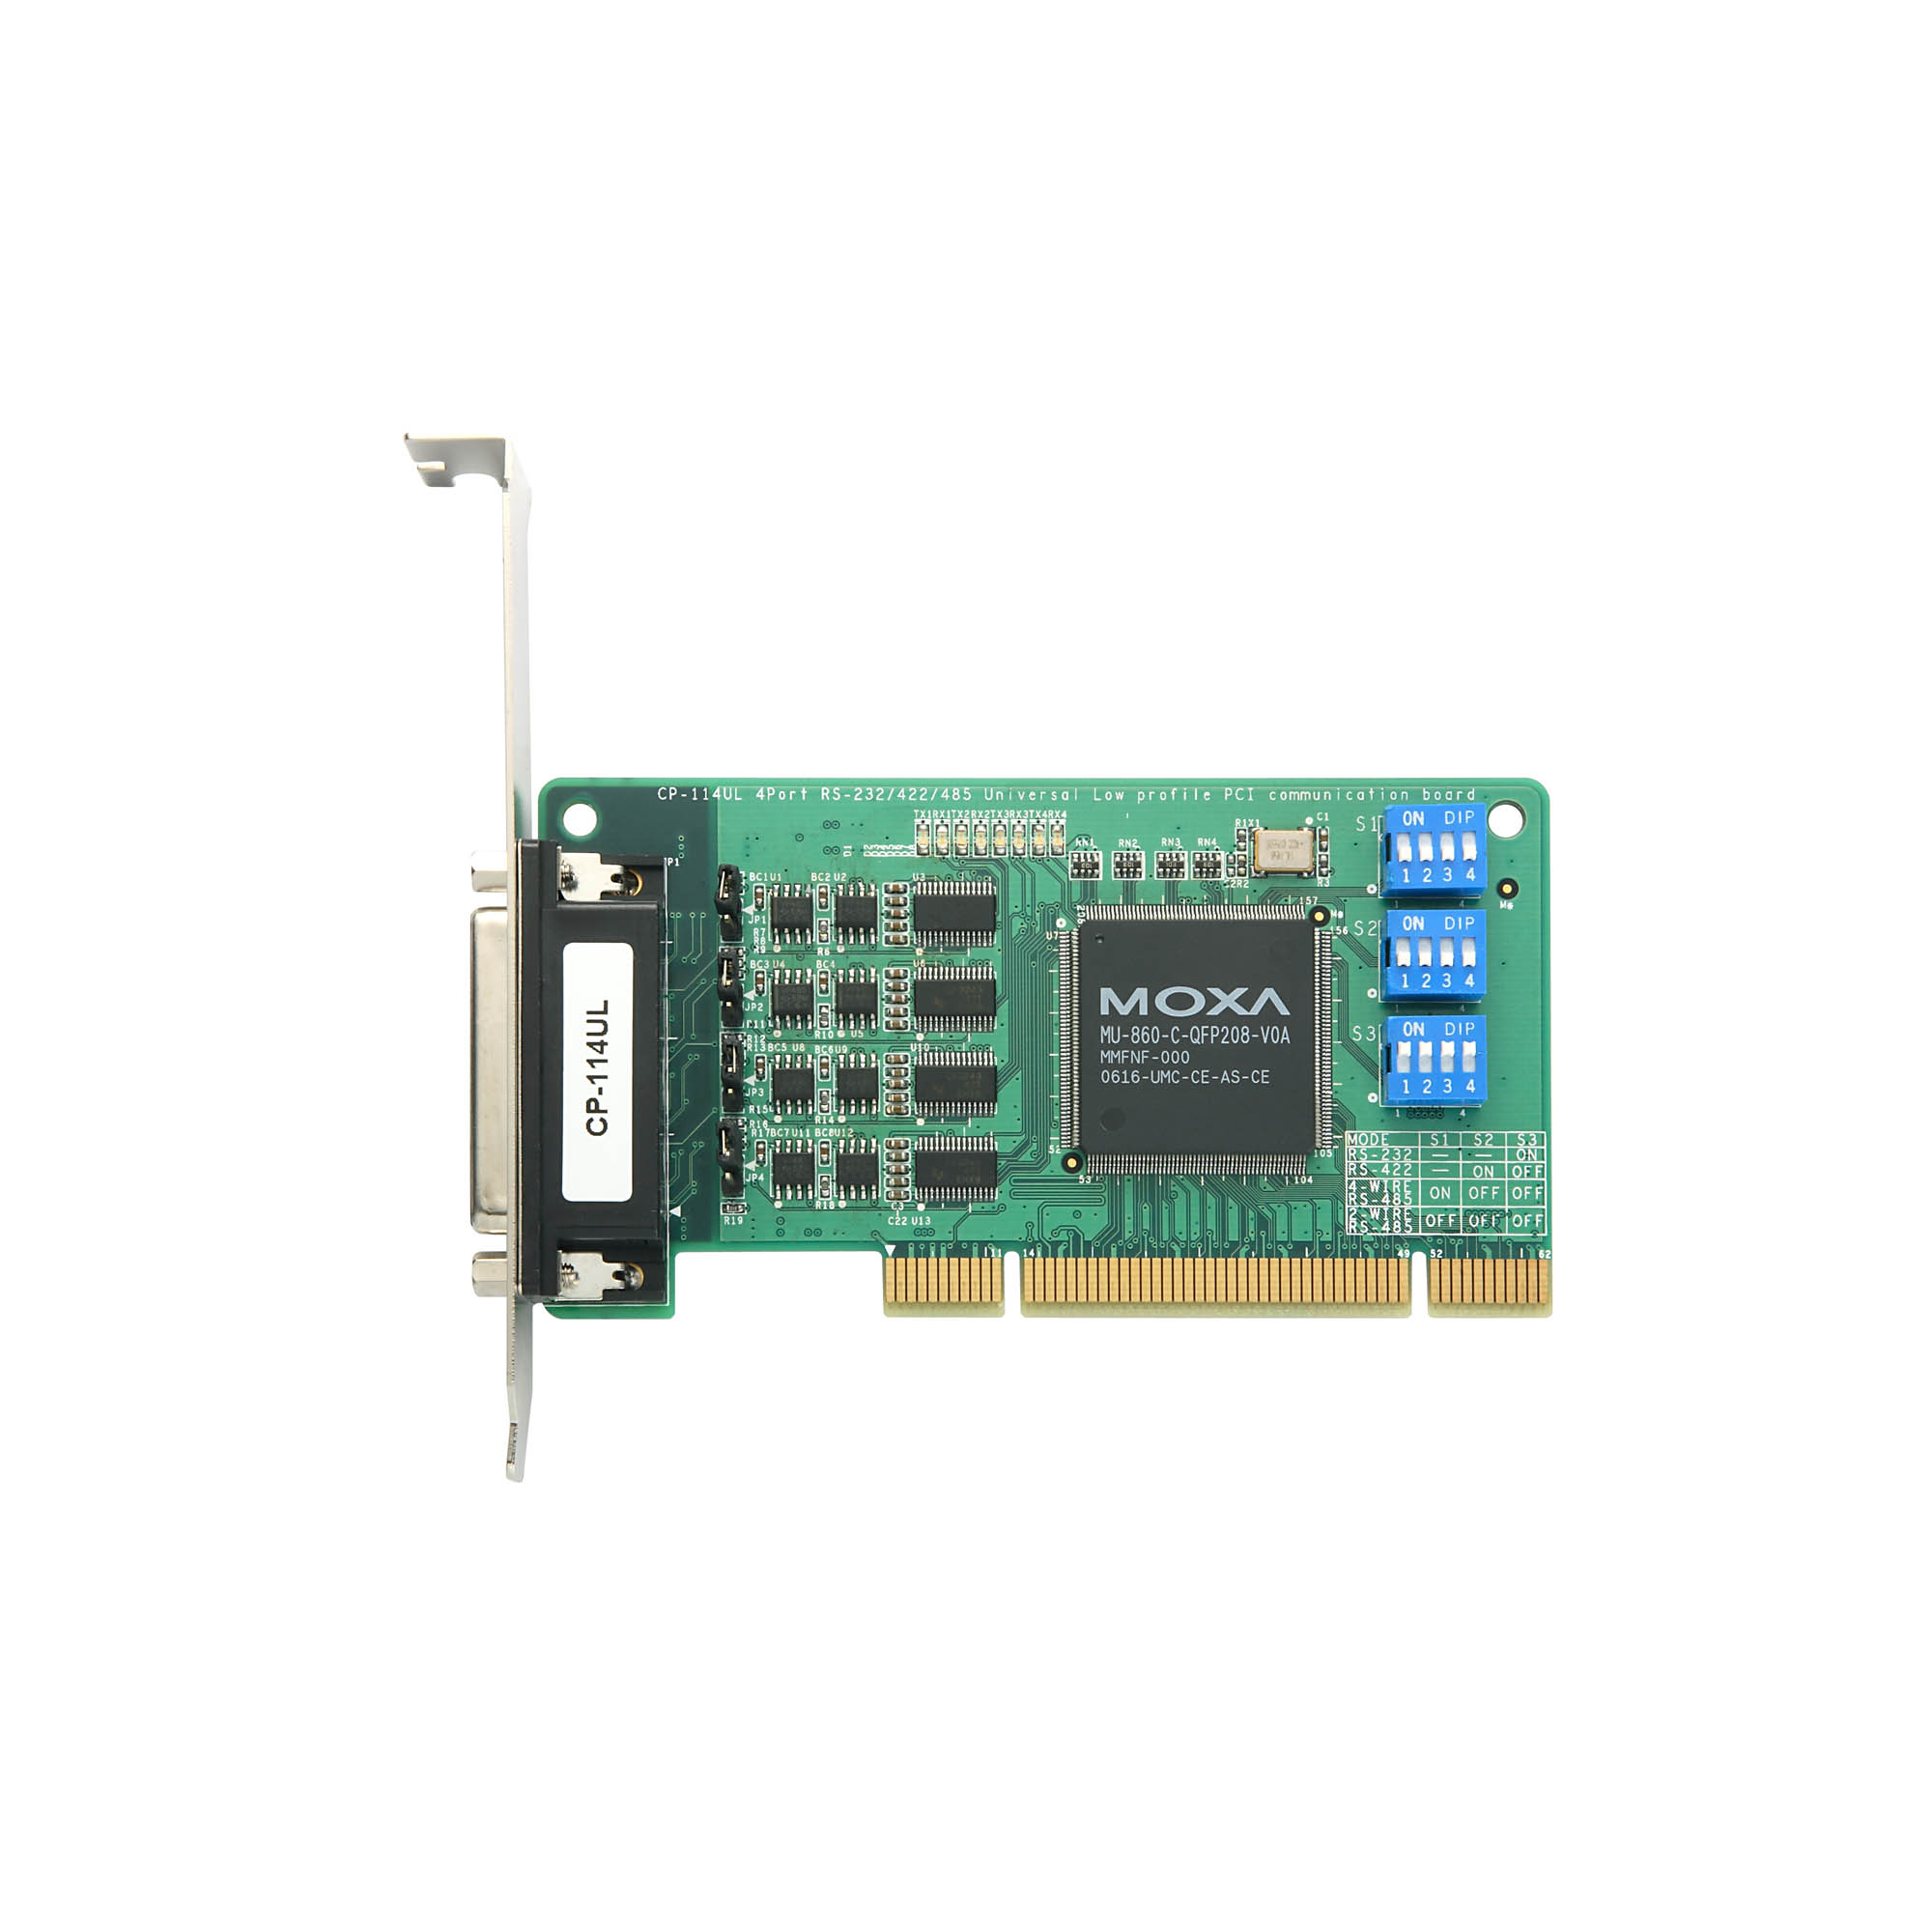 CP-114UL 系列- PCIe/UPCI/PCI 串列卡| MOXA